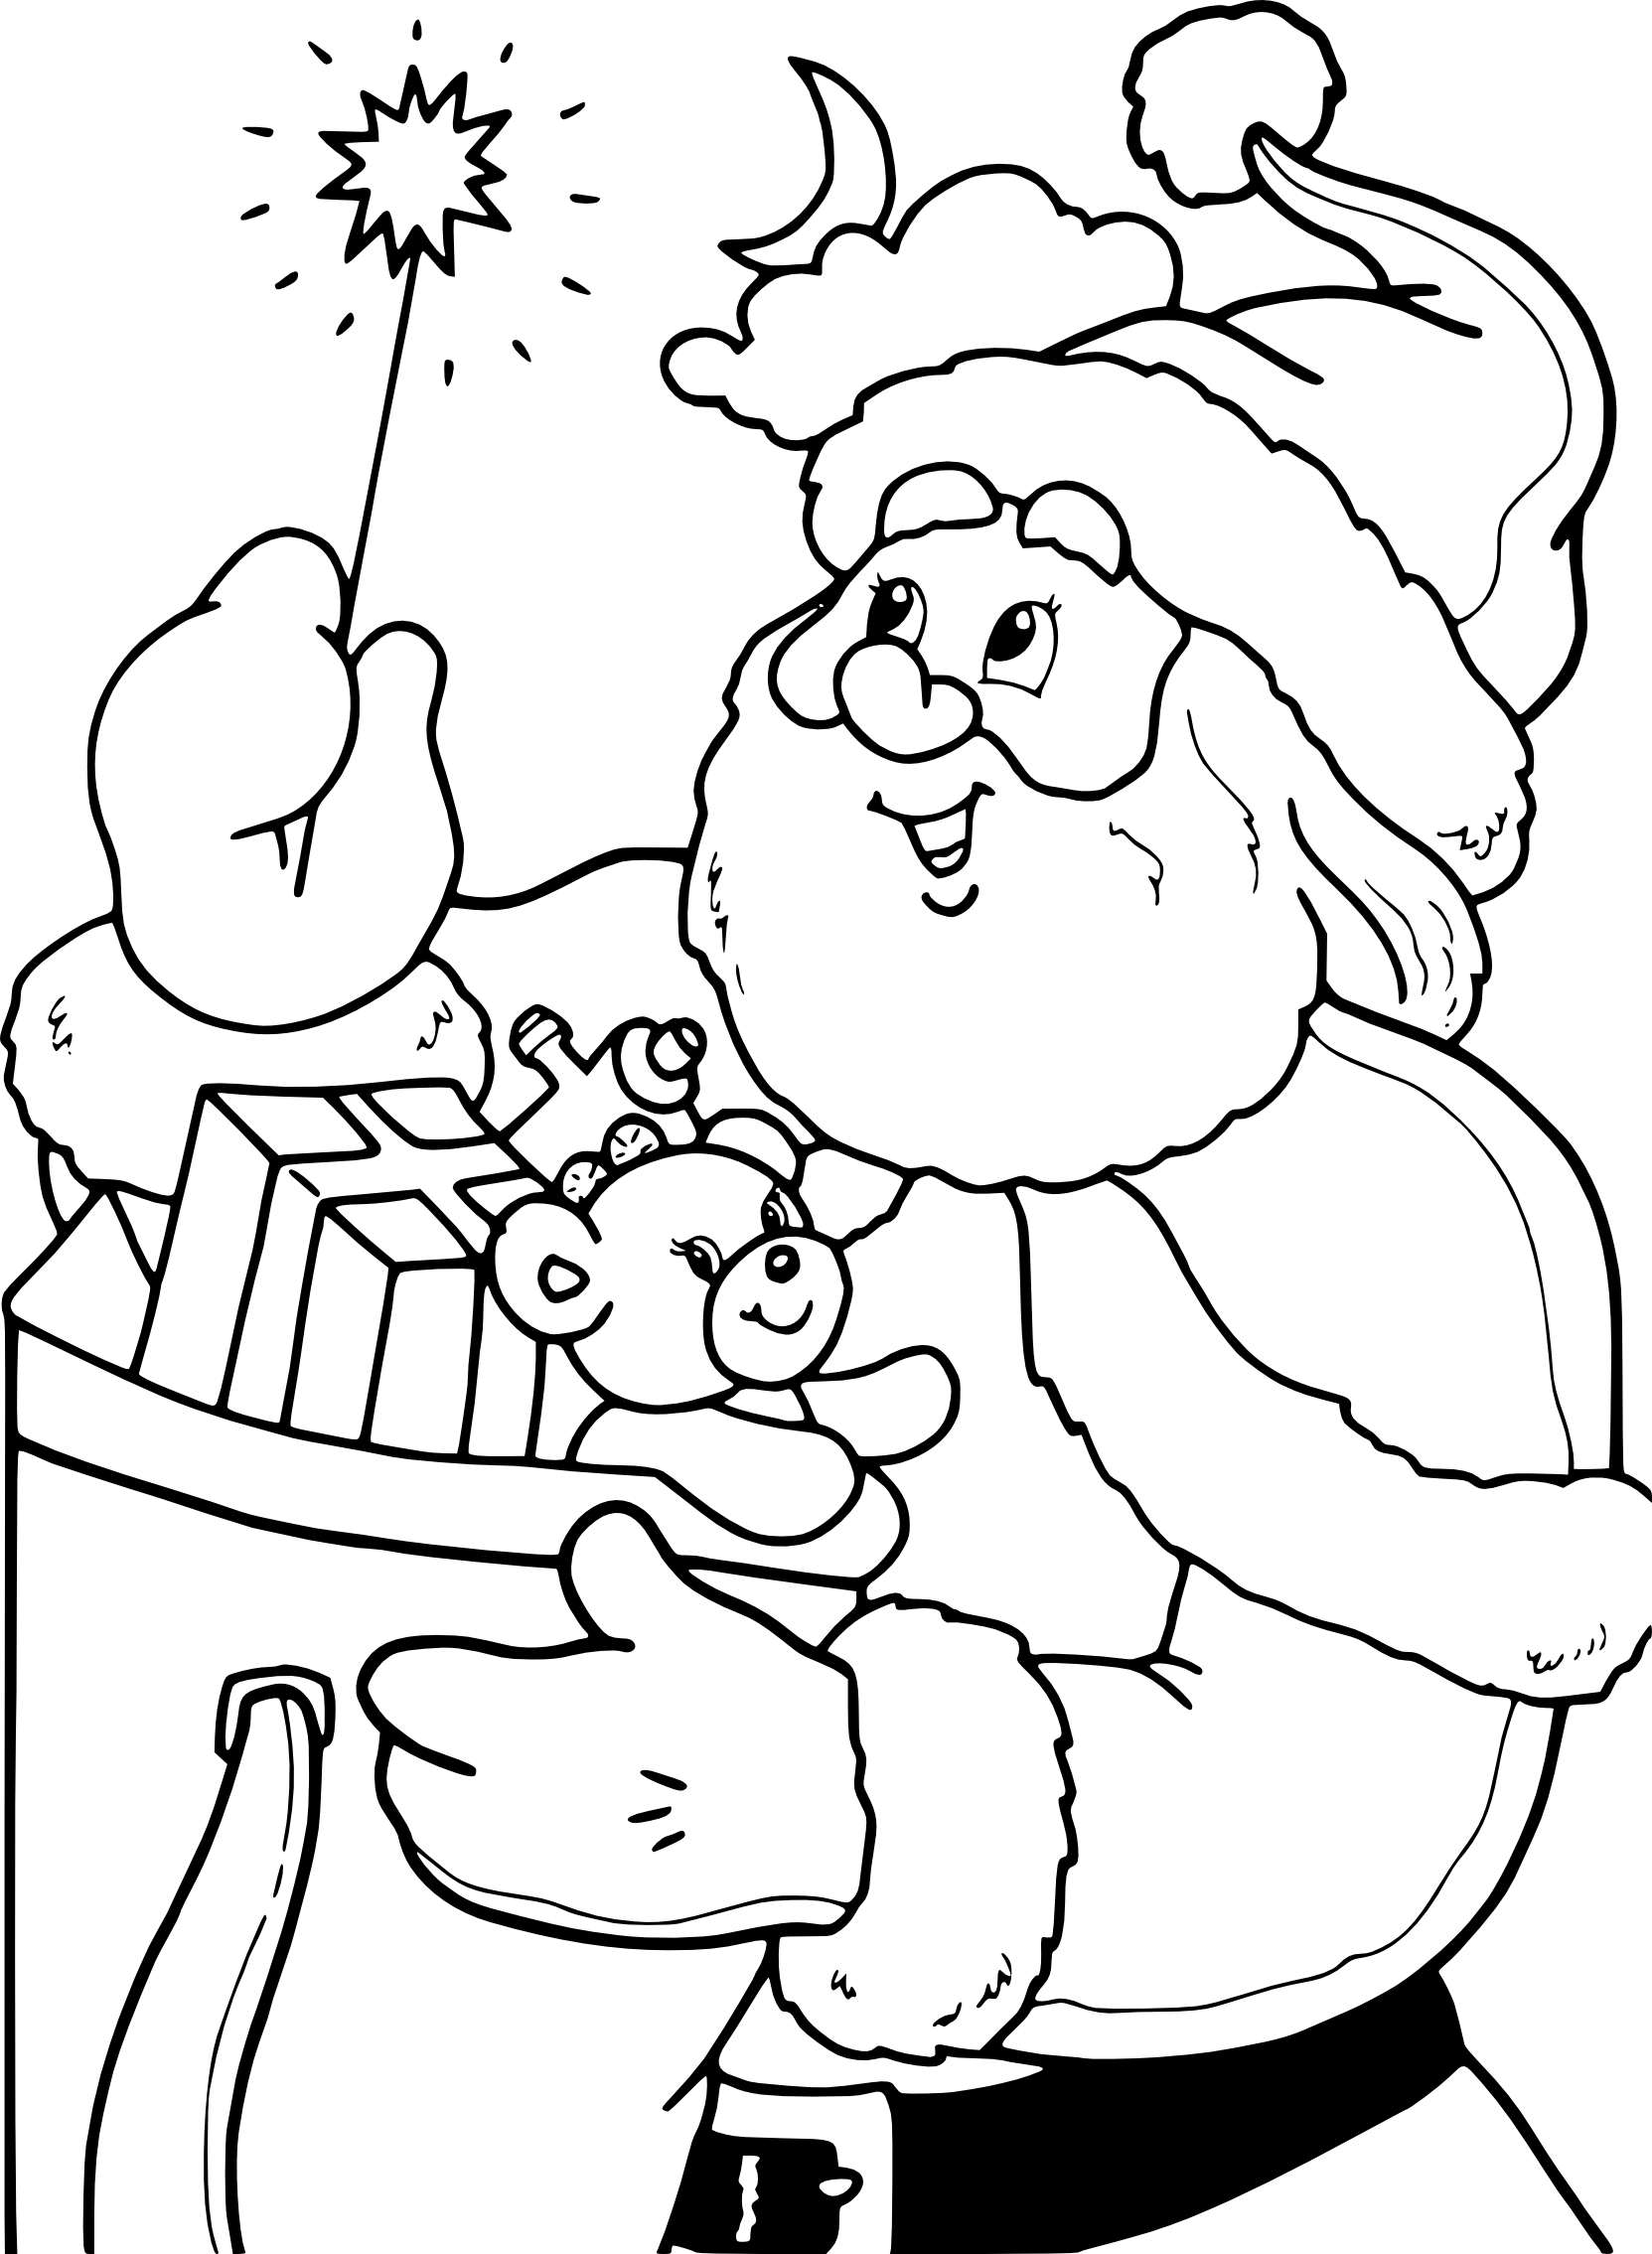 Disegno di Babbo Natale e la bacchetta magica da colorare